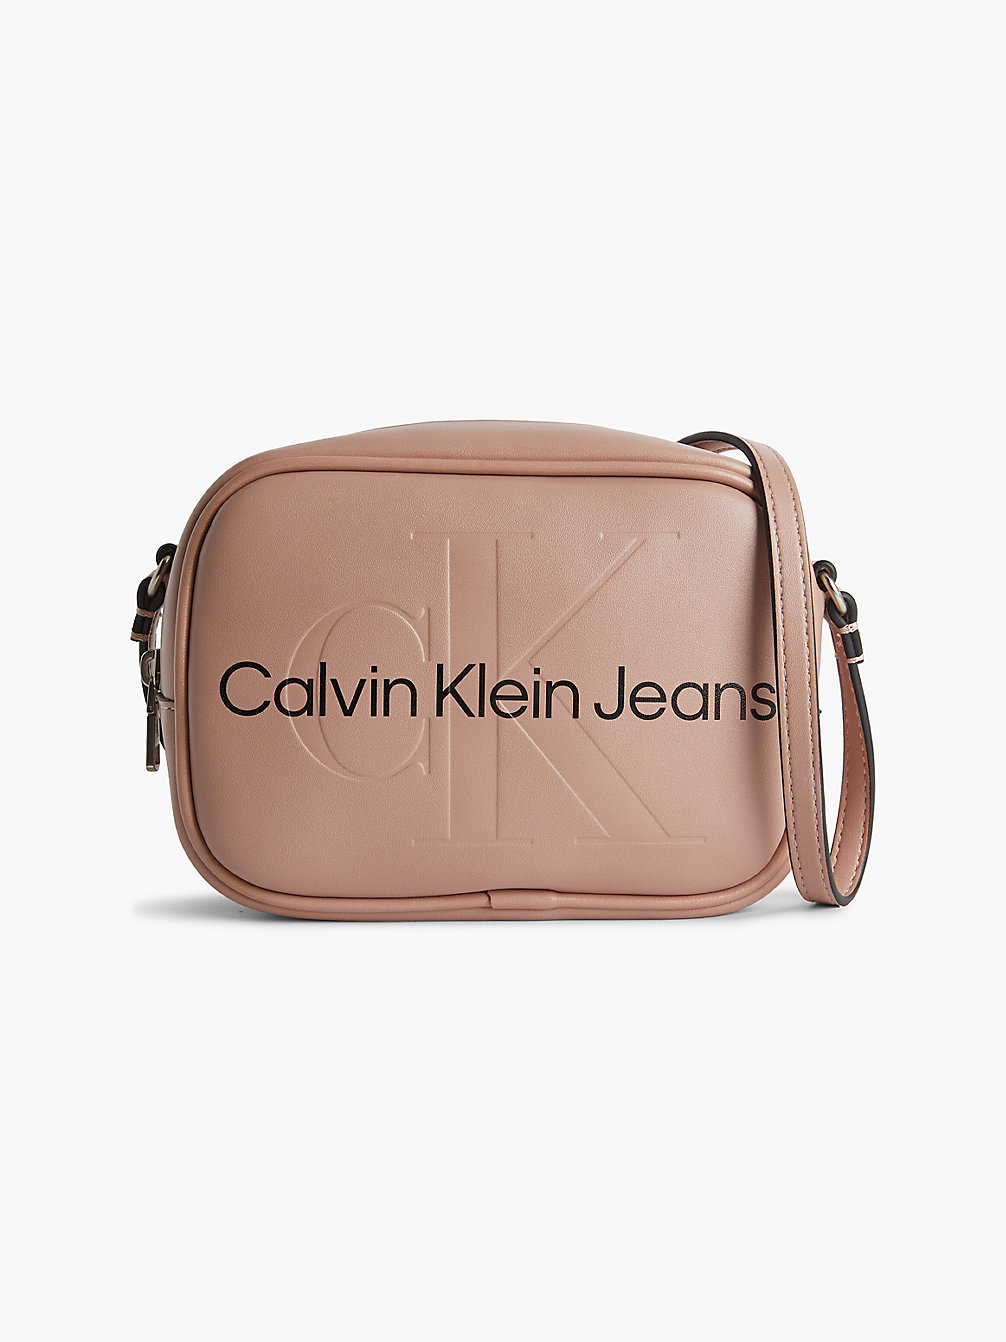 DARK BLUSH Crossbody Bag undefined Damen Calvin Klein